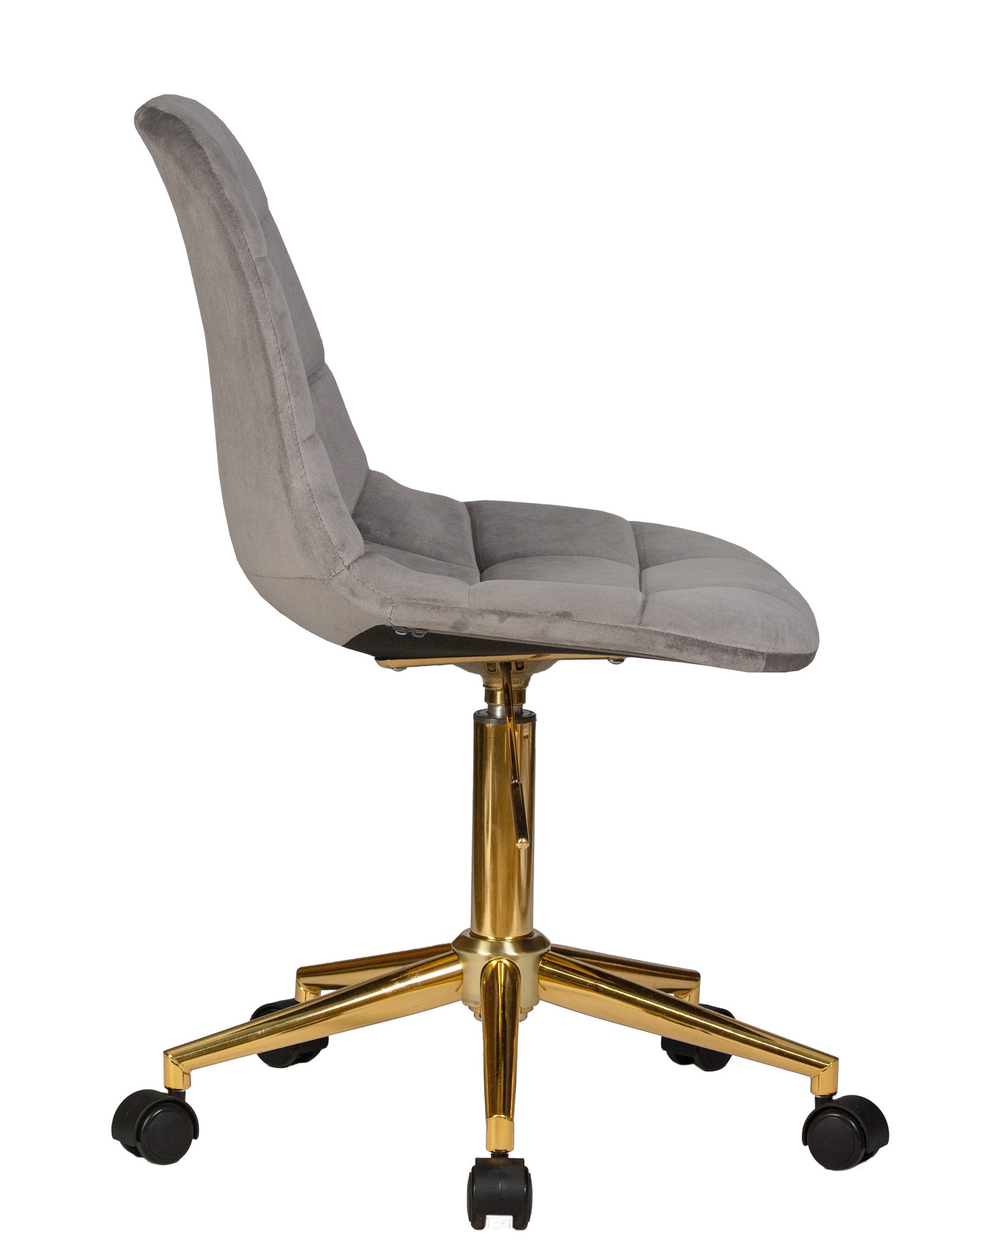 Офисное кресло для персонала  MONTY GOLD (серый велюр (MJ9-75))